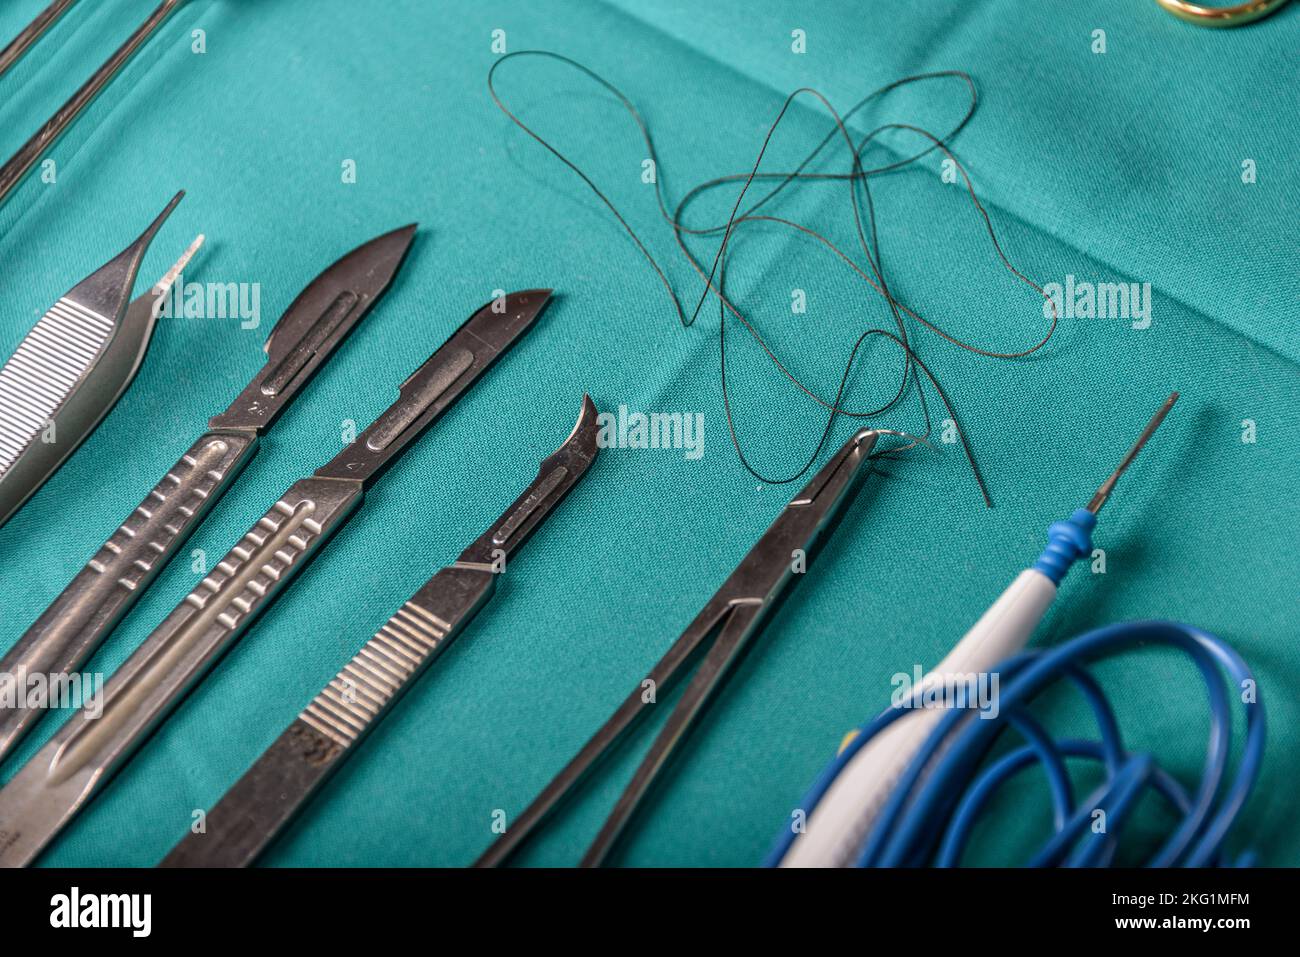 Équipement chirurgical et dispositifs médicaux dans la salle d'opération. Ciseaux stériles et autres instruments médicaux. Banque D'Images